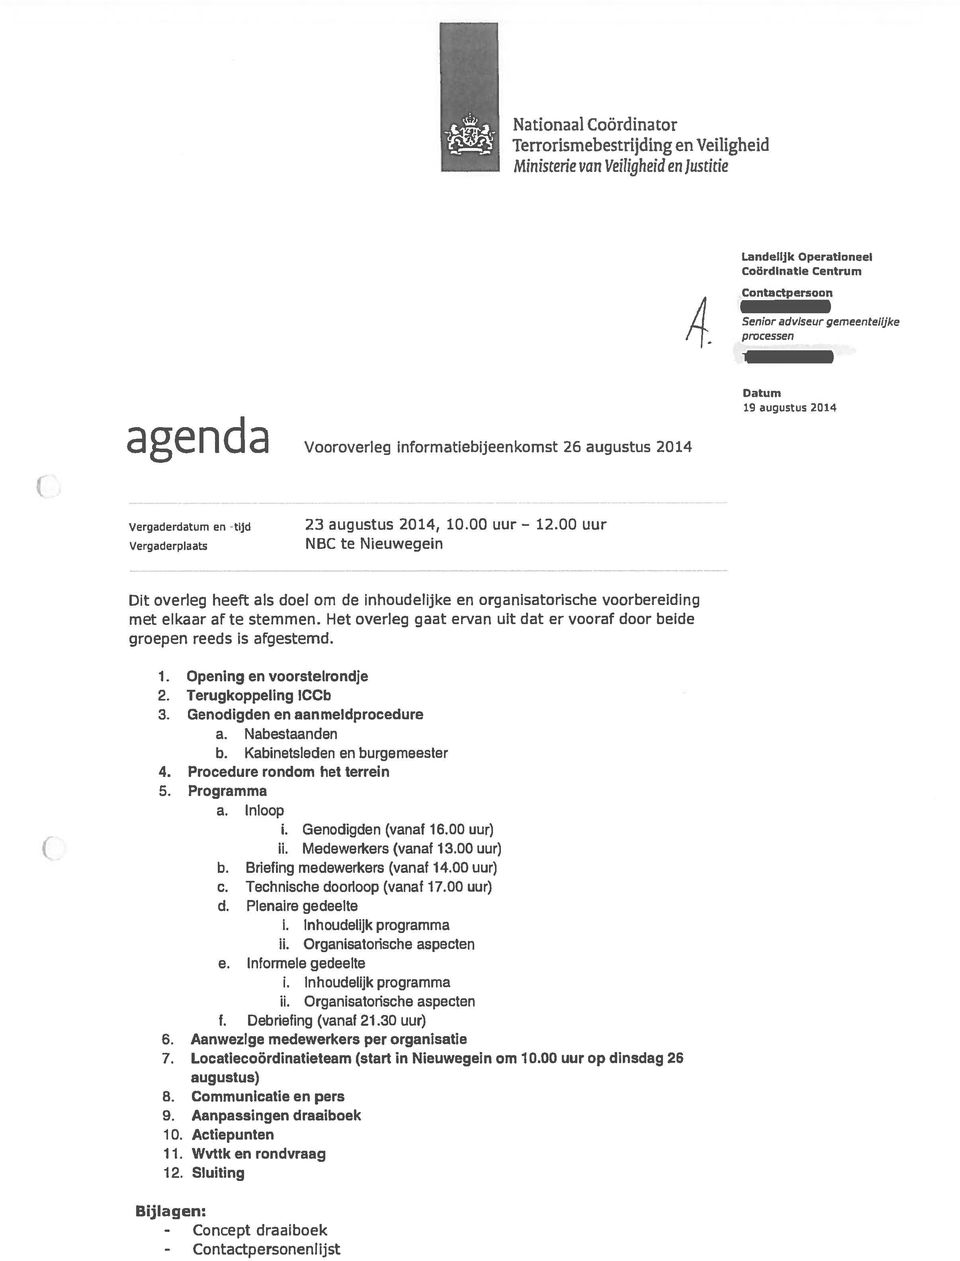 00 uur Vergaderplaats NBC te Nieuwegein Datum 19 augustus 2014 Dit overleg heeft als doel om de inhoudelijke en organisatorische voorbereiding met elkaar af te stemmen.